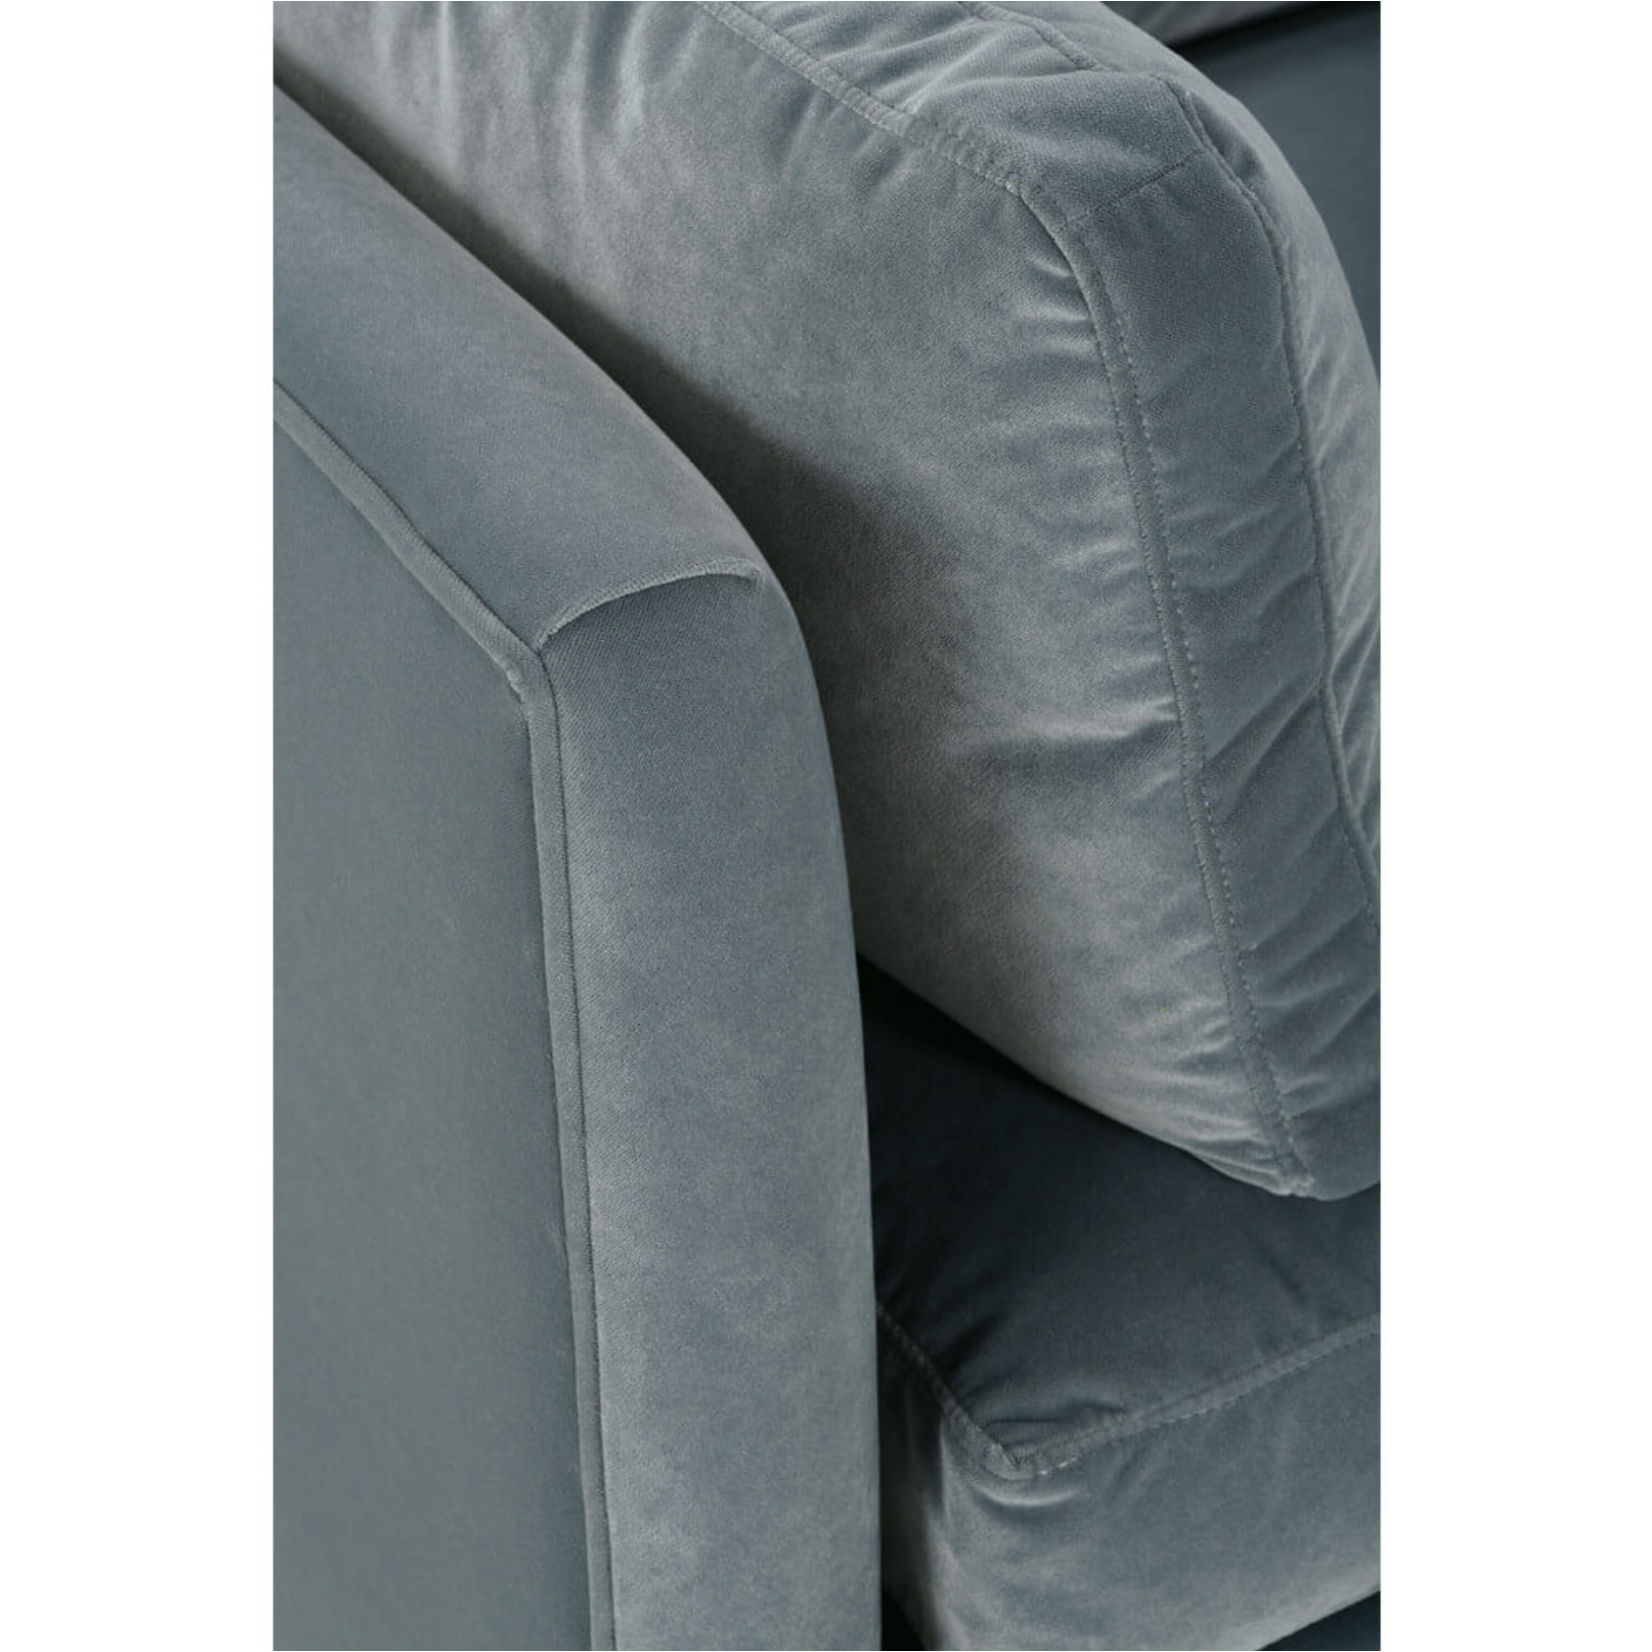 McKayla Upholstered Sofa 90"